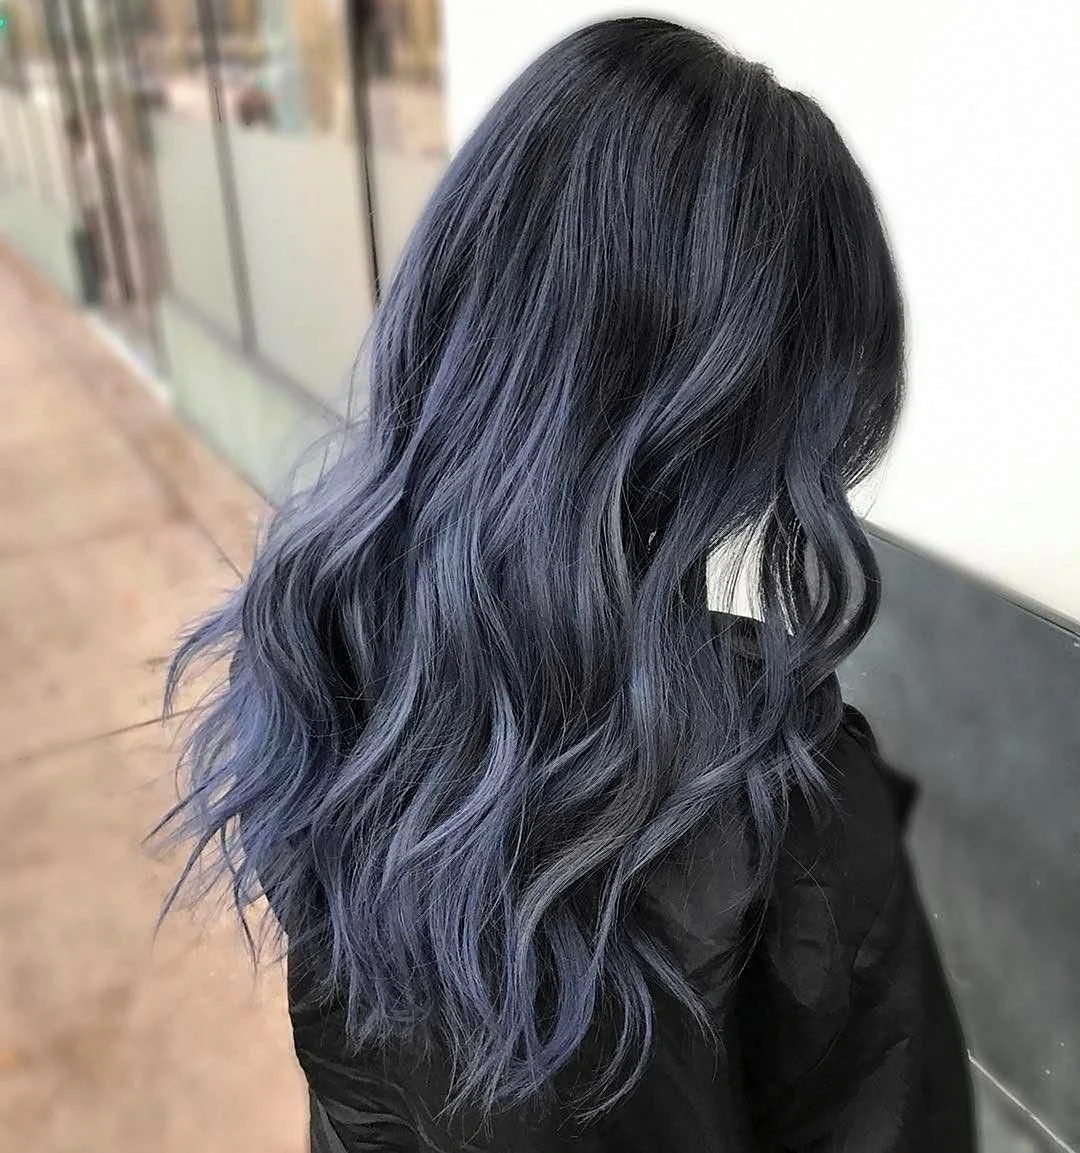 Пепельно синий цвет волос